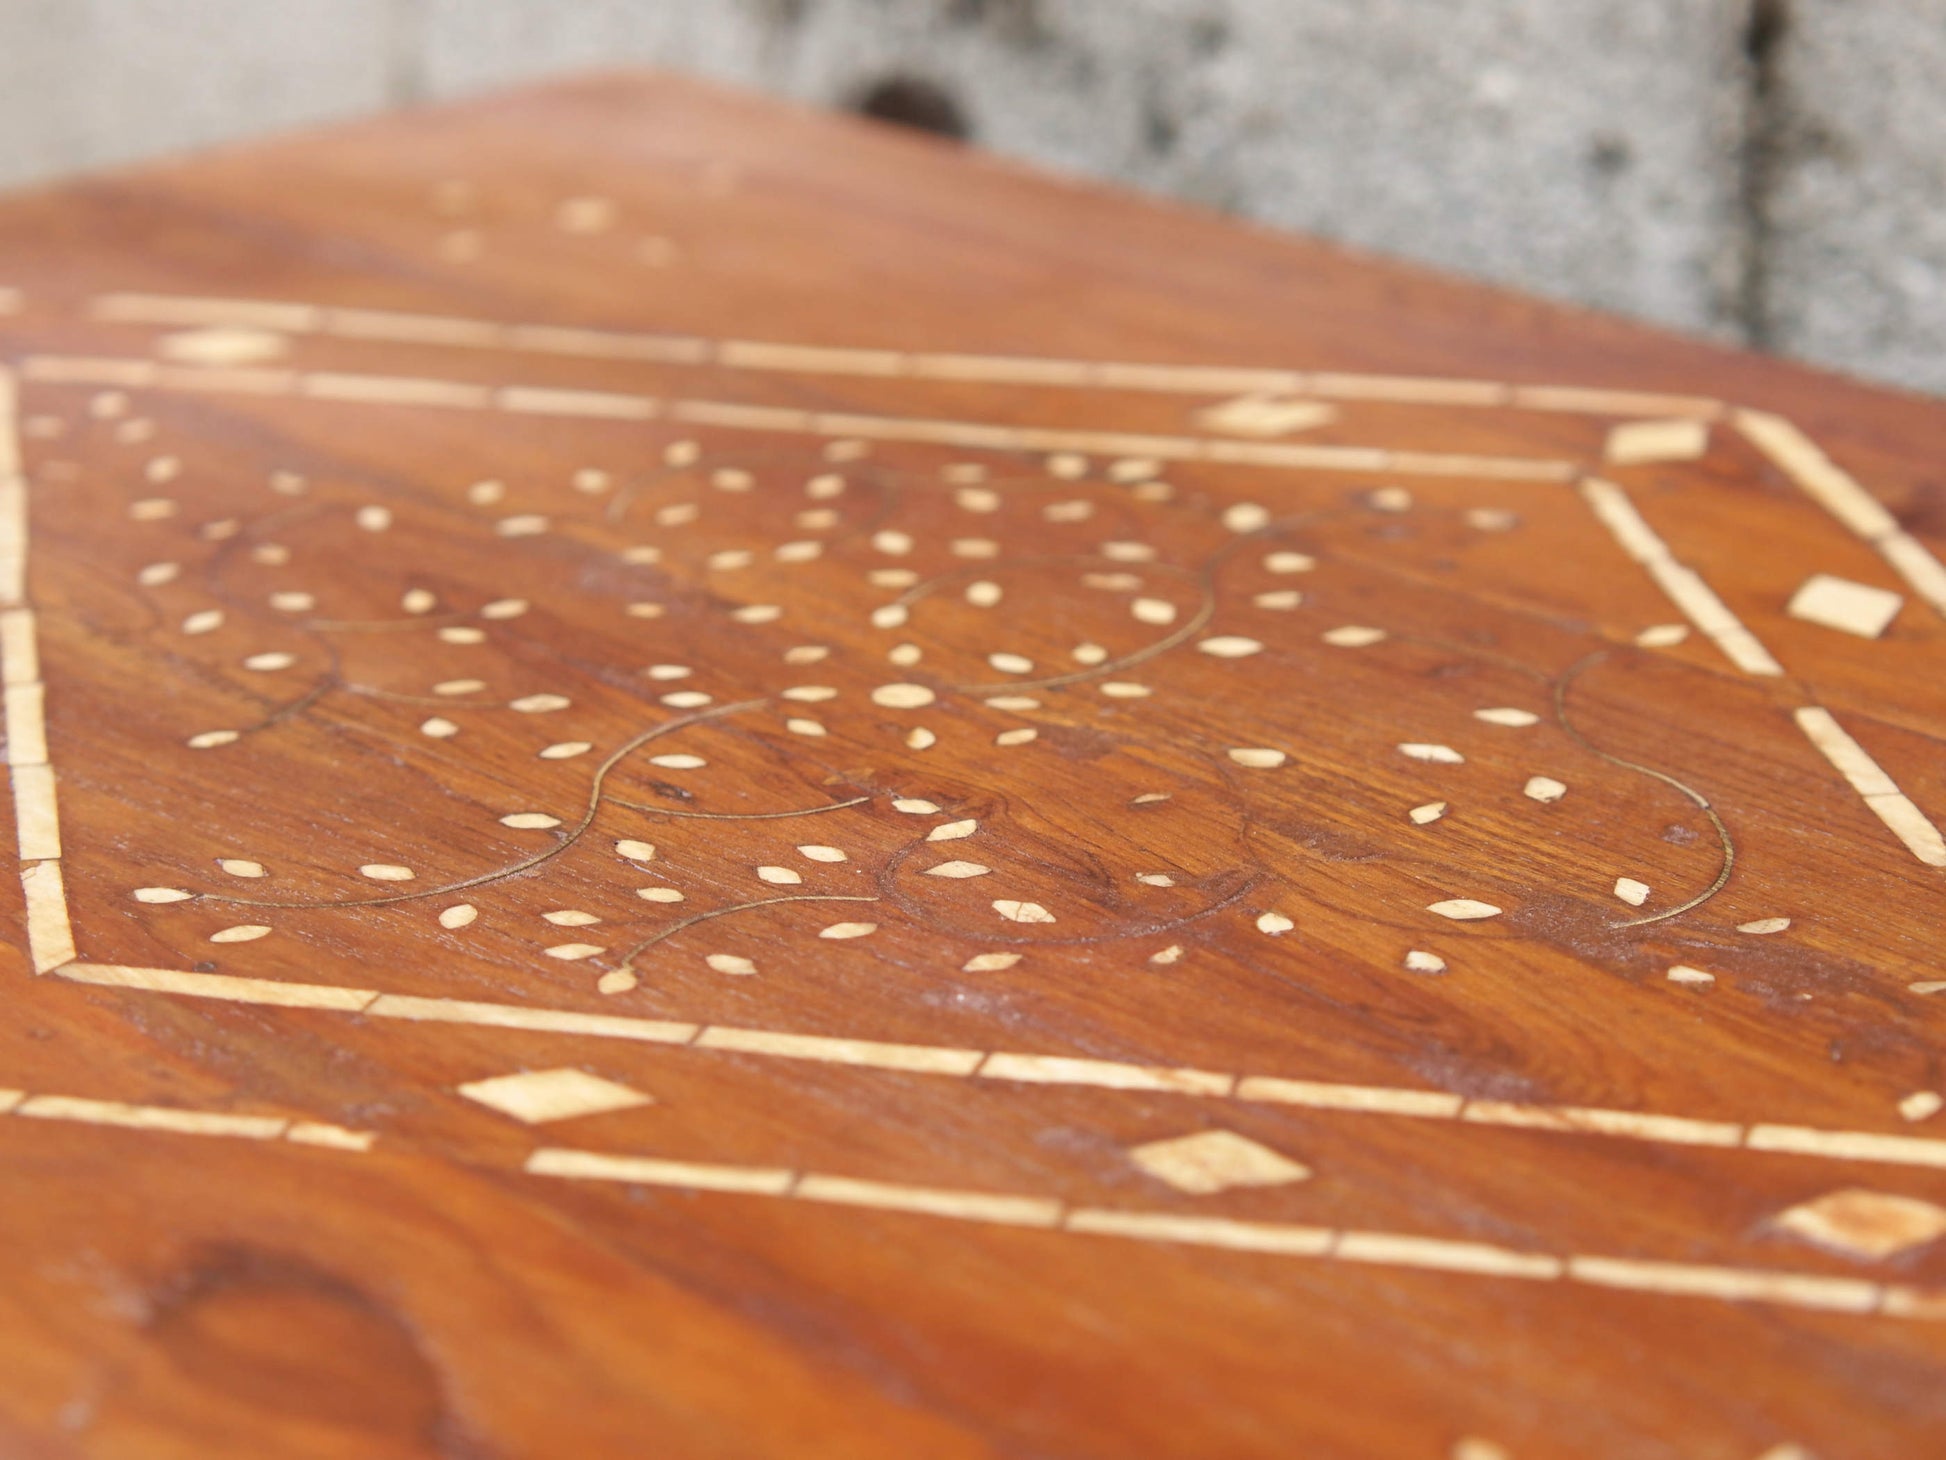 Tavolino Indiano con cassetto, in legno di teak con intarsi in osso. Pezzo unico di finitura artigianale .  Dimensioni 61x40 h34cm